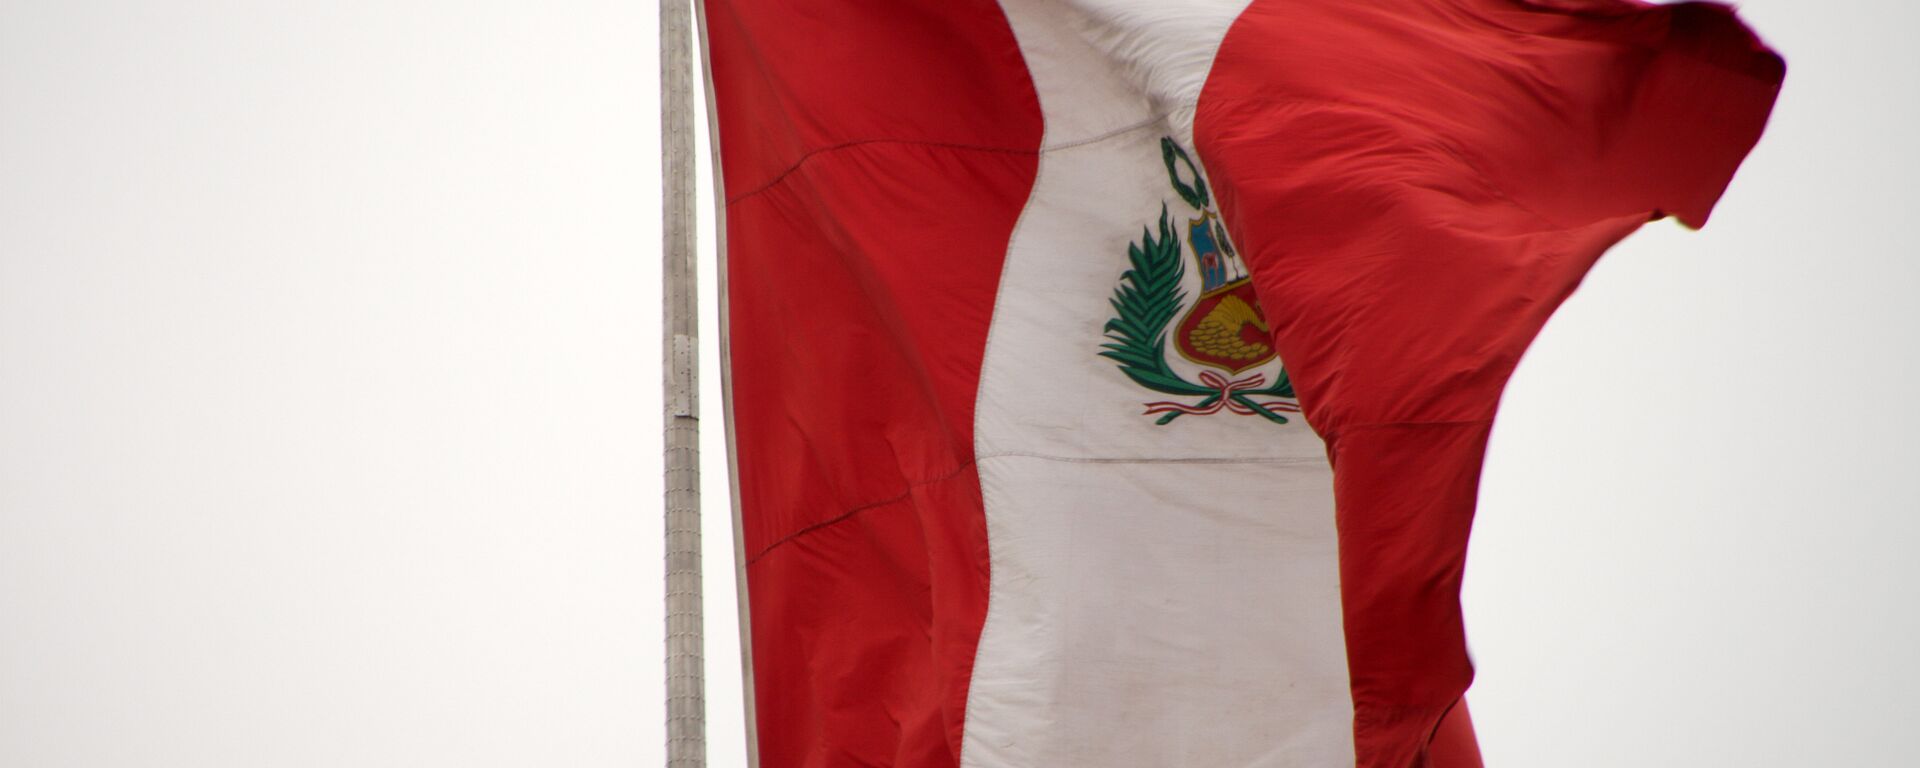 La bandera de Perú - Sputnik Mundo, 1920, 25.10.2021